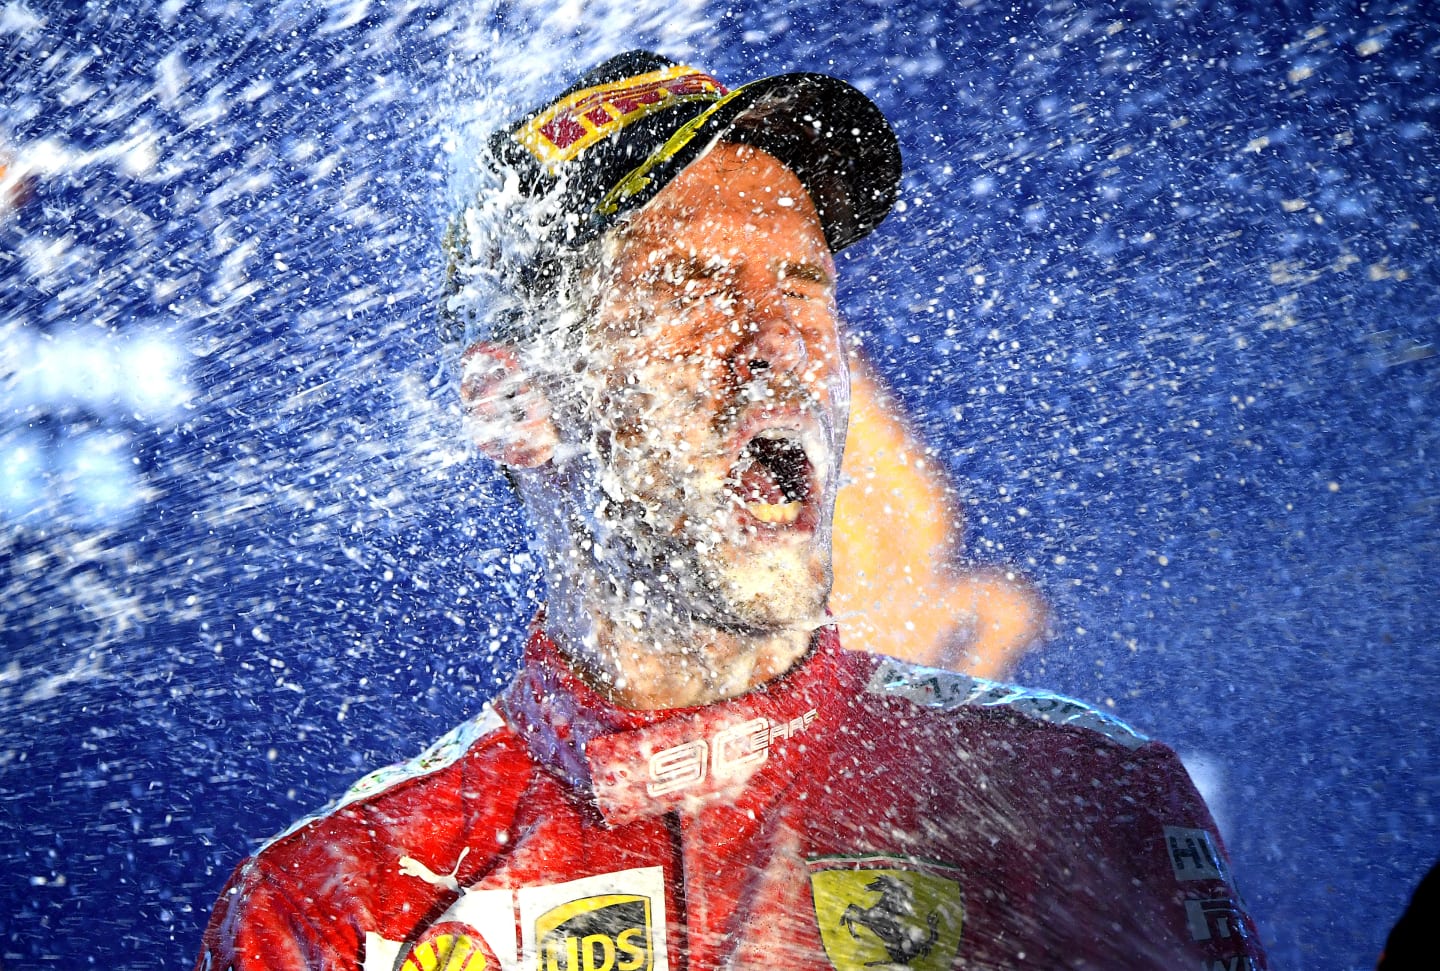 SINGAPORE, SINGAPORE - SEPTEMBER 22: Race winner Sebastian Vettel of Germany and Ferrari celebrates